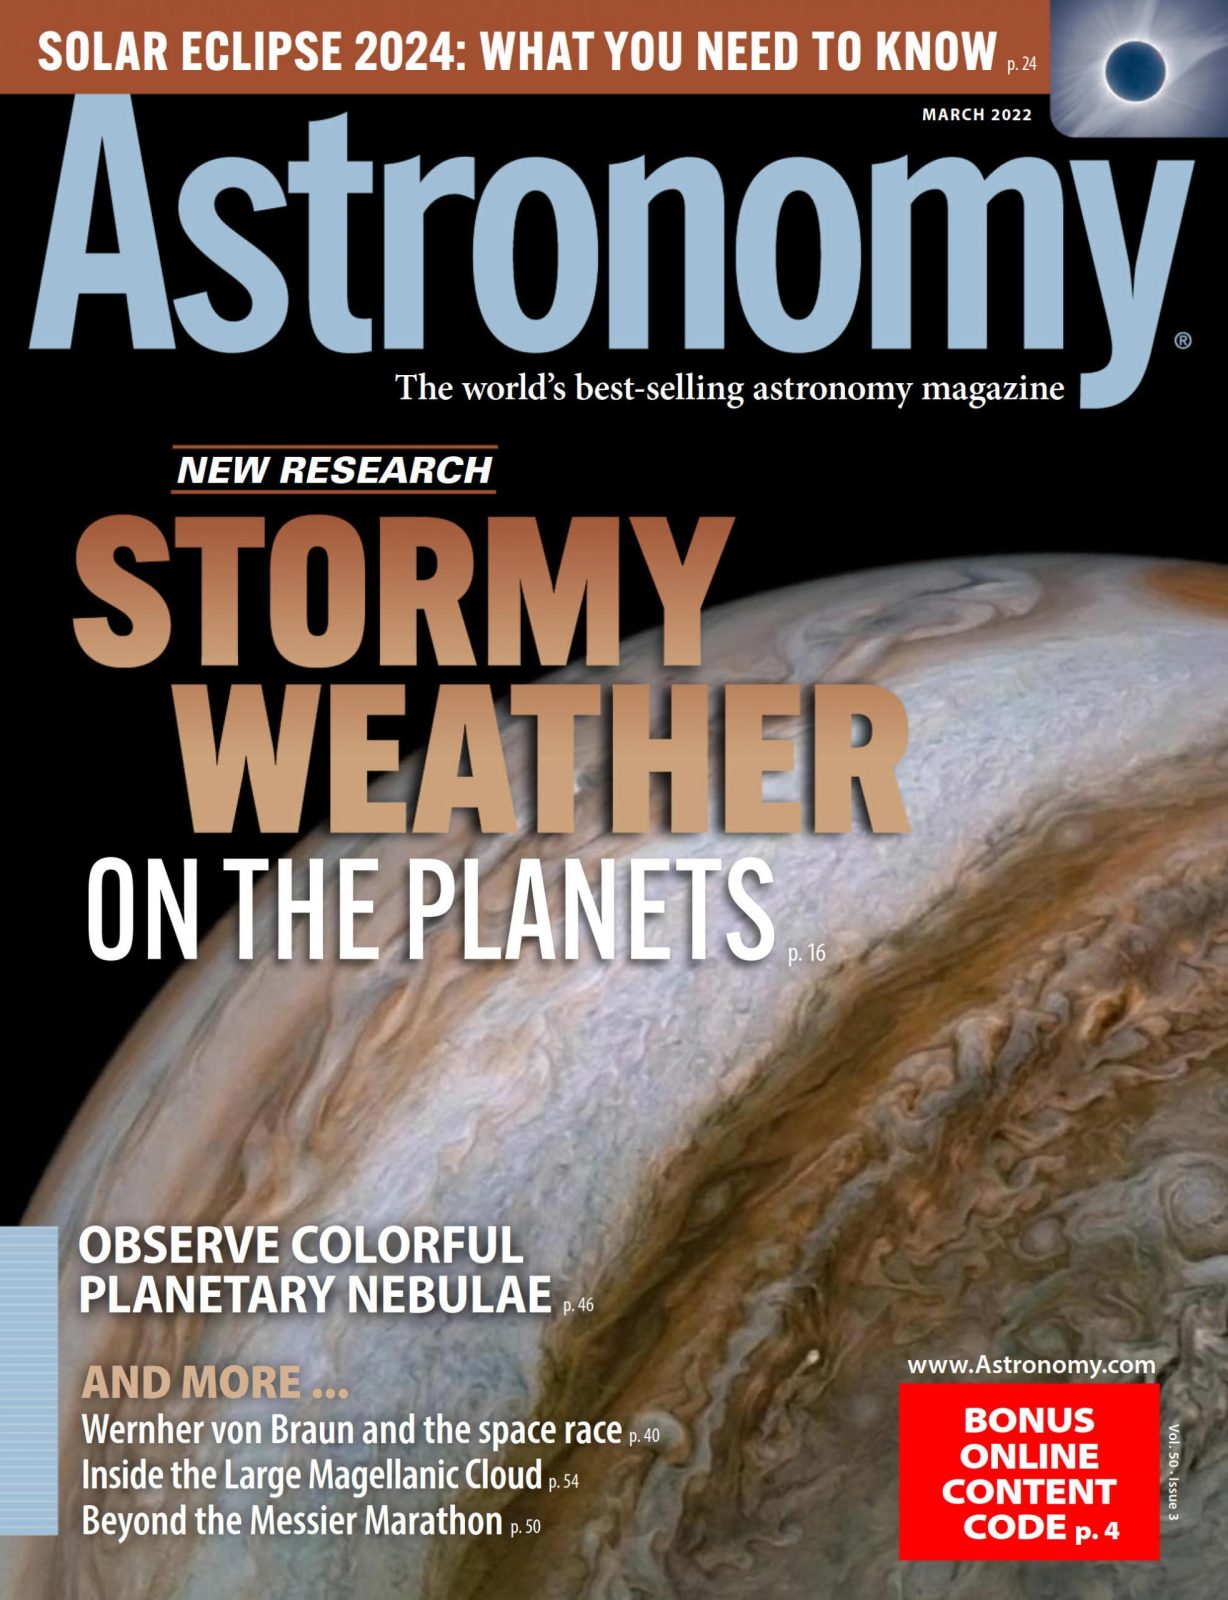 Astronomy 天文学杂志 MAR 2022